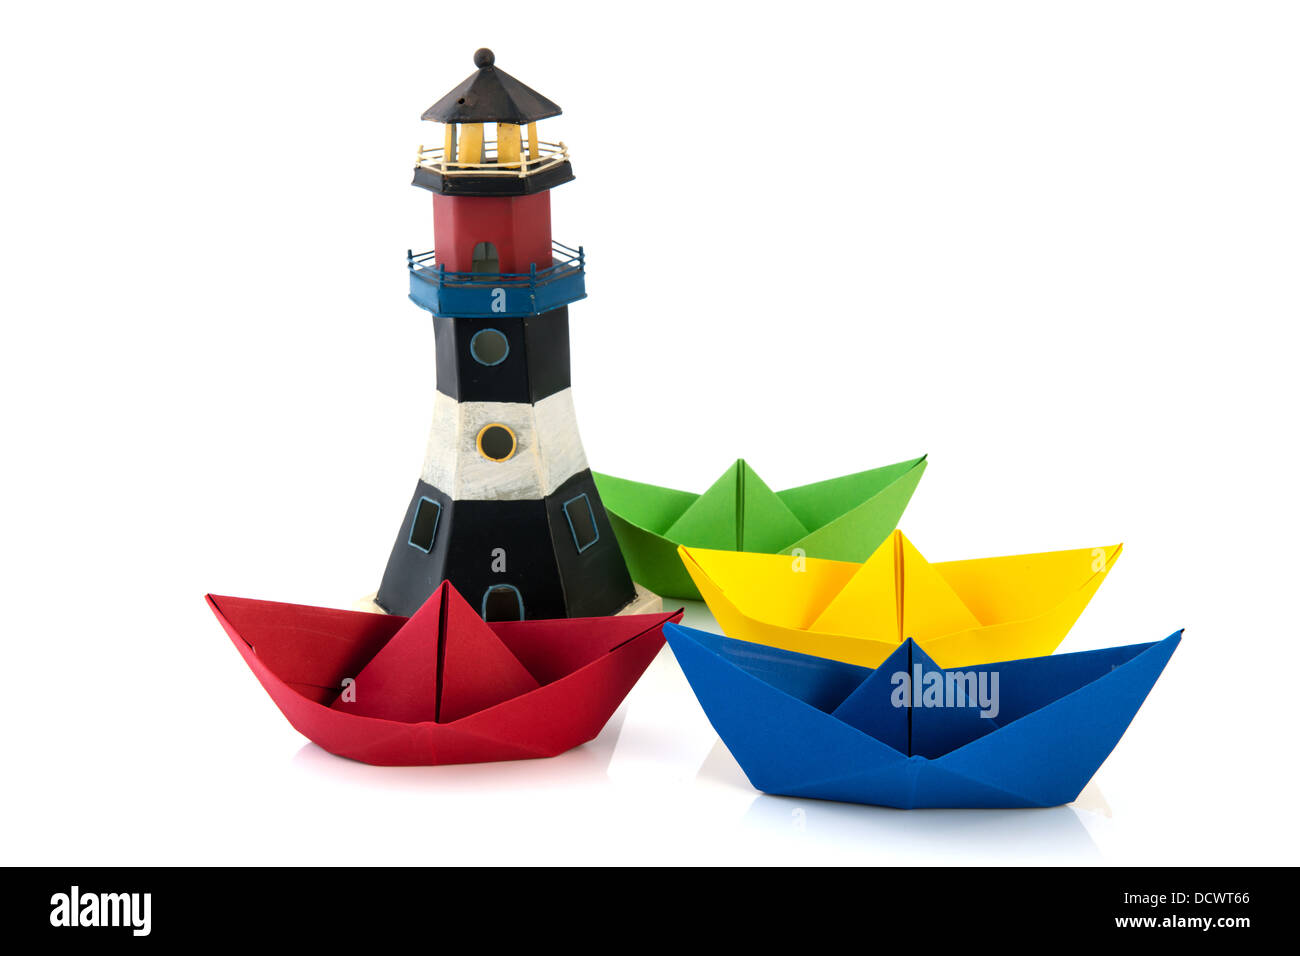 Bateaux de papier coloré avec lighthouse Banque D'Images